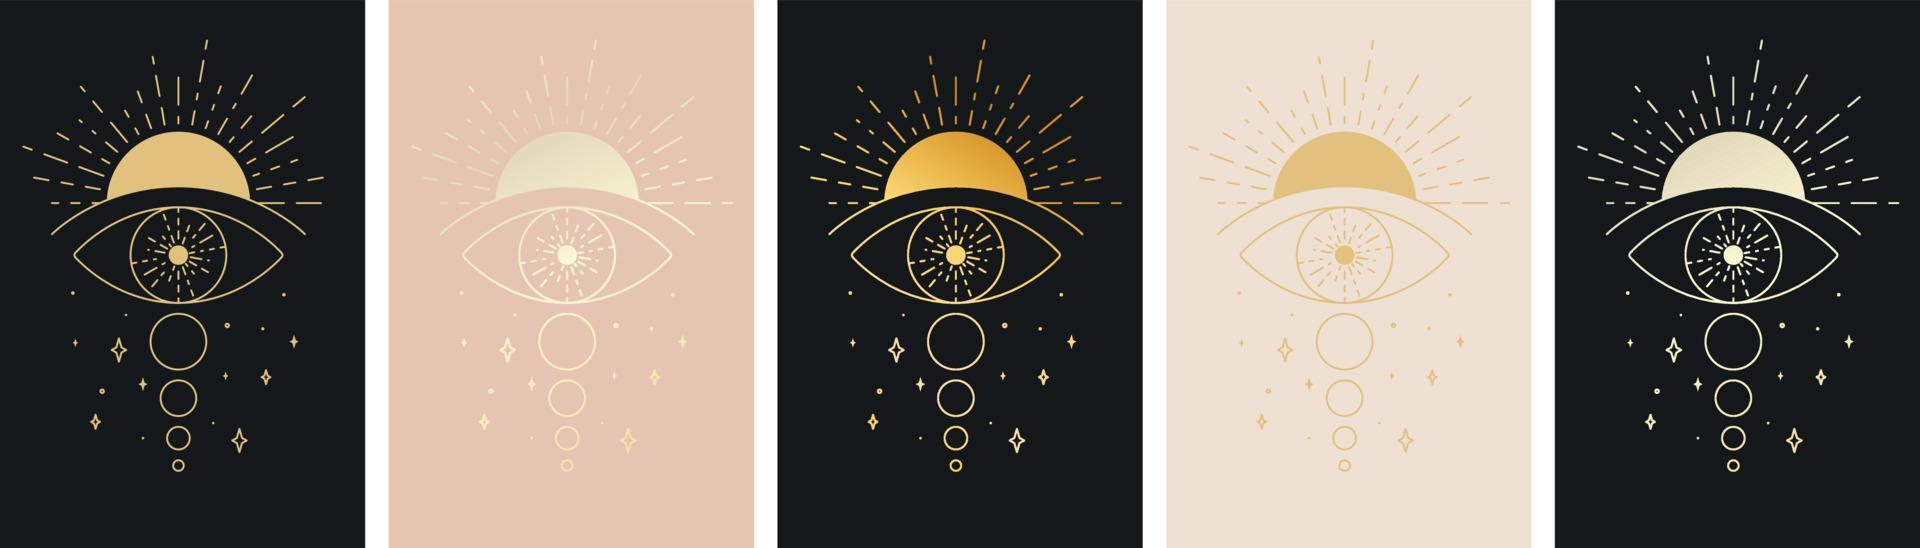 occhio che tutto vede con set di icone della linea del tatuaggio del sole e della luna. simbolo del terzo occhio. illustrazione vettoriale